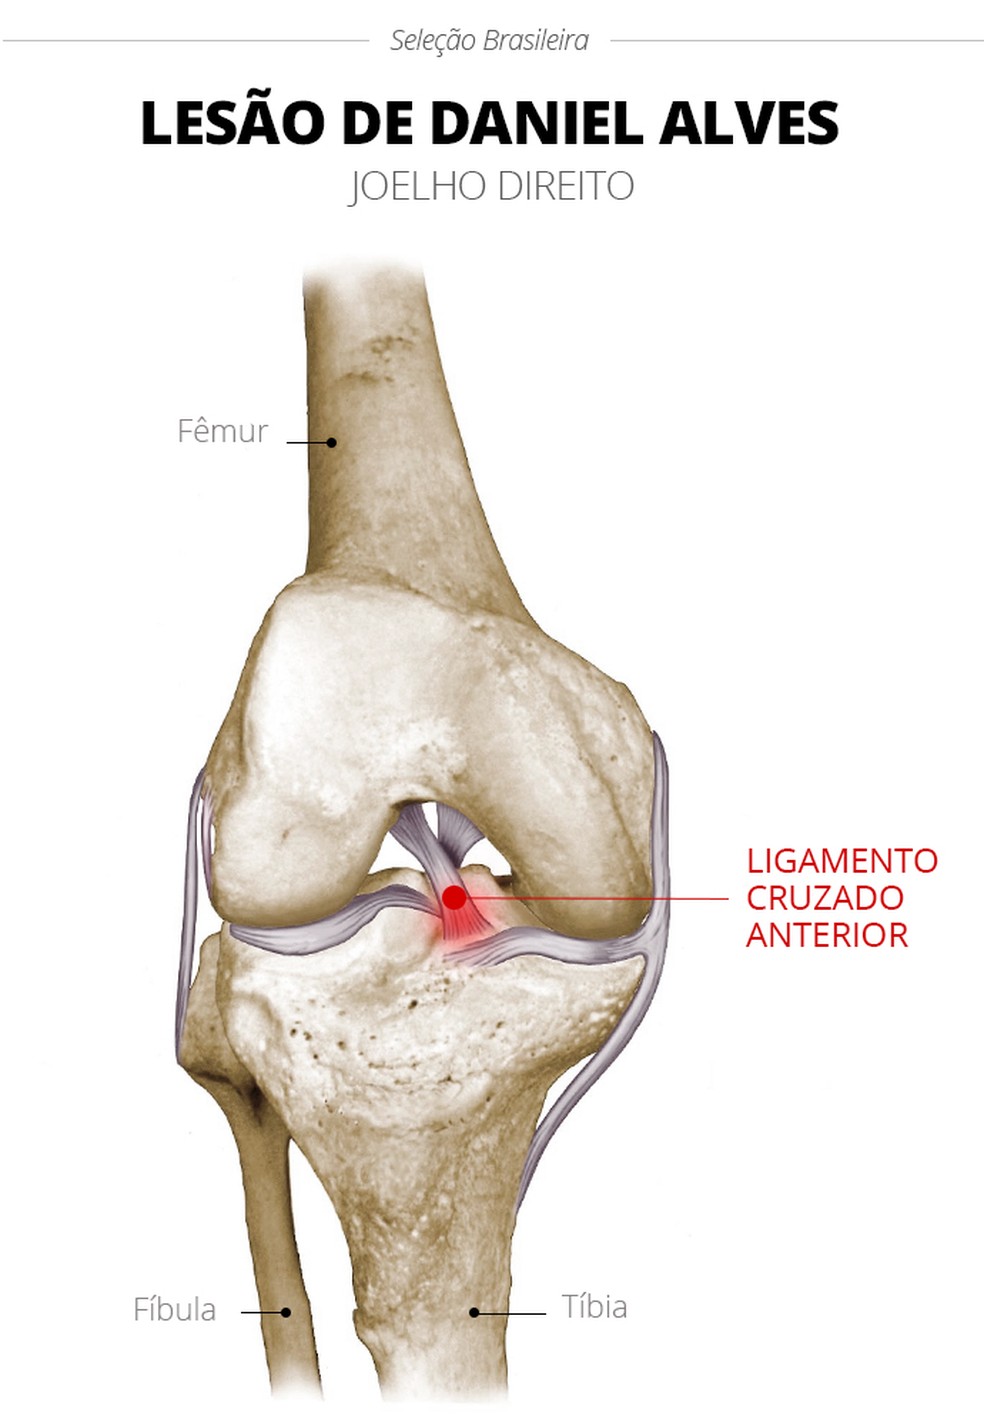 Lesão de Daniel Alves é no ligamento cruzado anterior (Foto: Infoesporte)